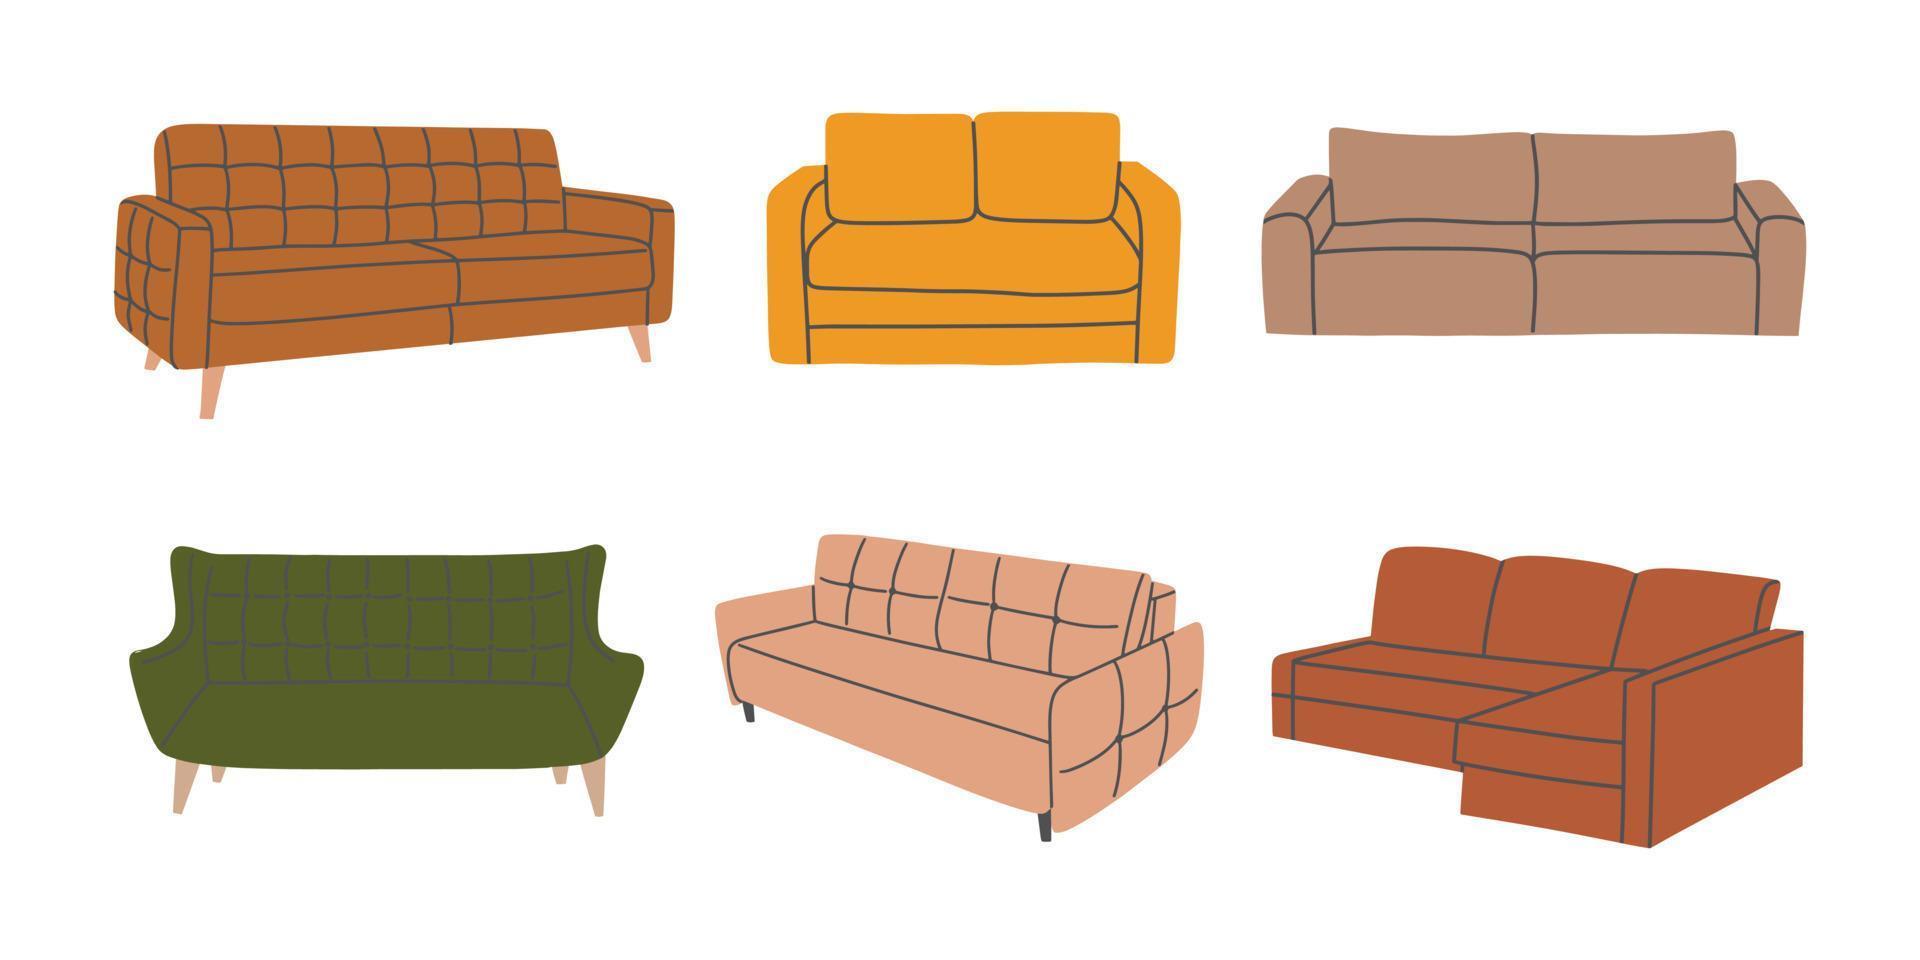 Set aus verschiedenen trendigen, farbenfrohen Sofas. Polstermöbelkollektion für Innenarchitektur und Dekoration. hand gezeichnete vektorillustration lokalisiert auf weißem hintergrund vektor